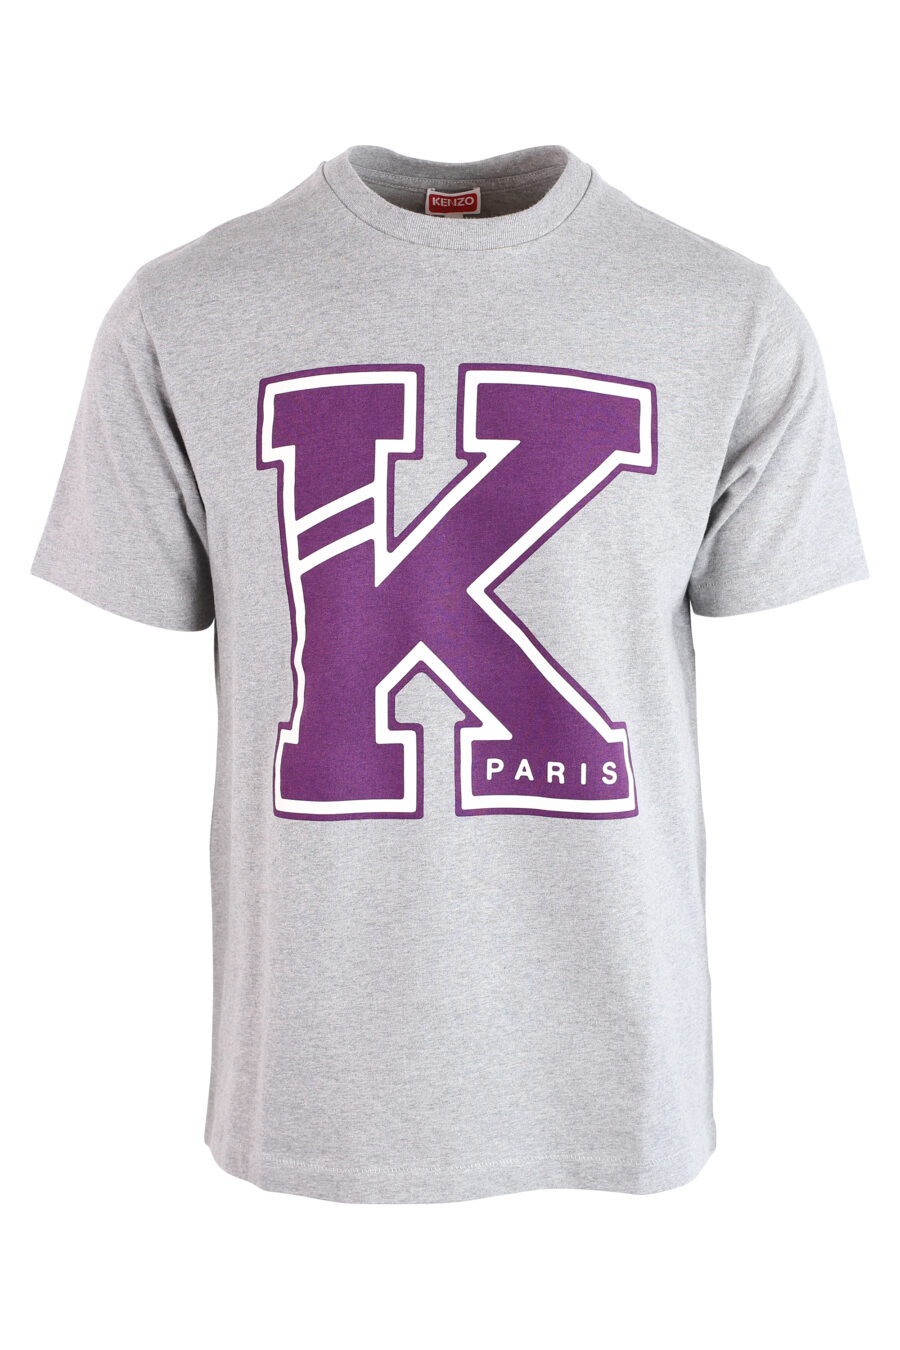 Camiseta gris con maxilogo "K" violeta - IMG 3195